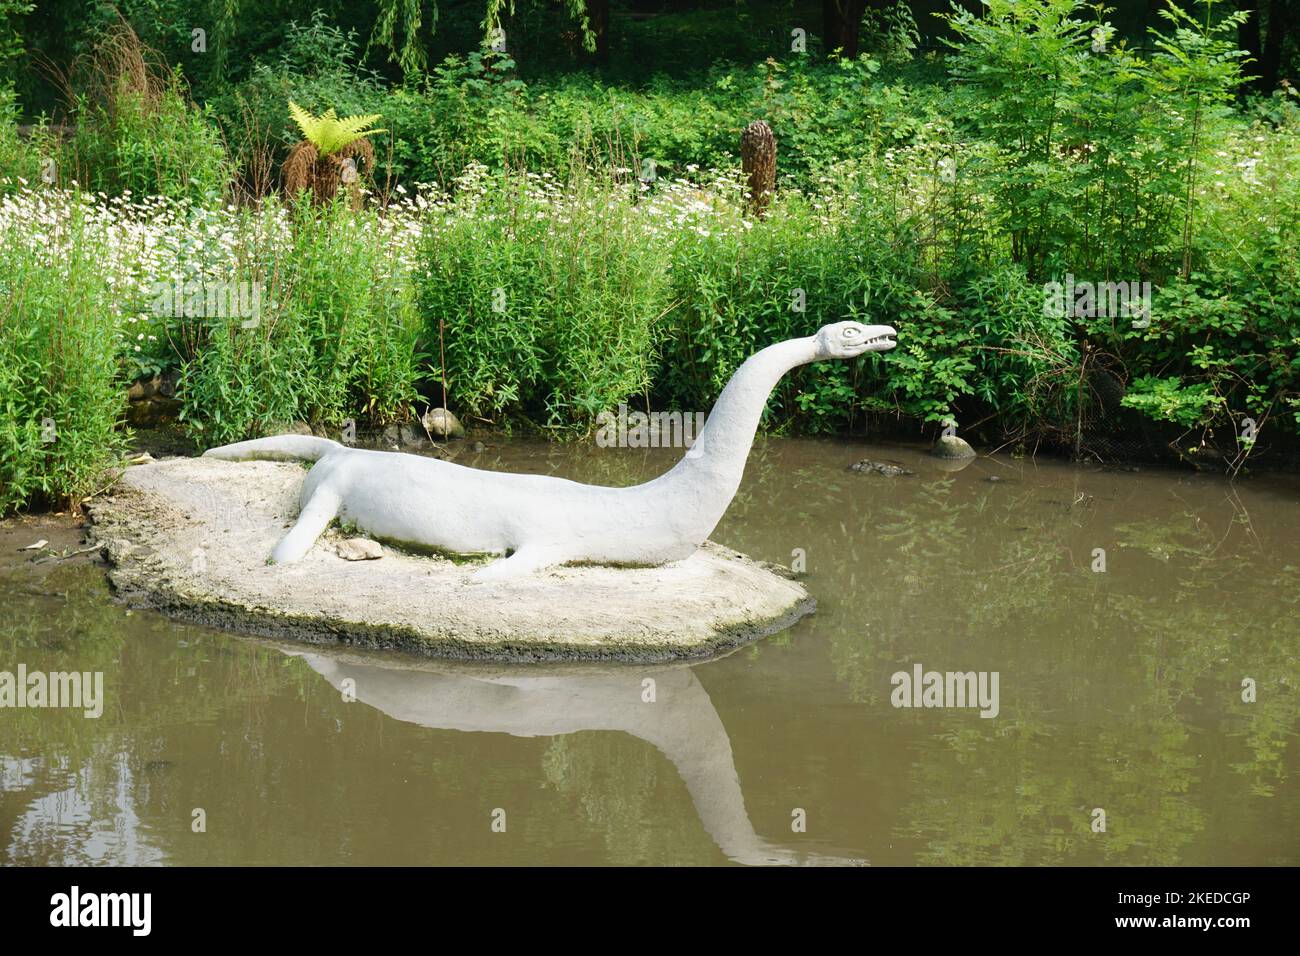 Sculptures de dinosaures et autres animaux éteints près de la rivière EFFRA au Crystal Palace à Londres, Angleterre, Royaume-Uni Banque D'Images